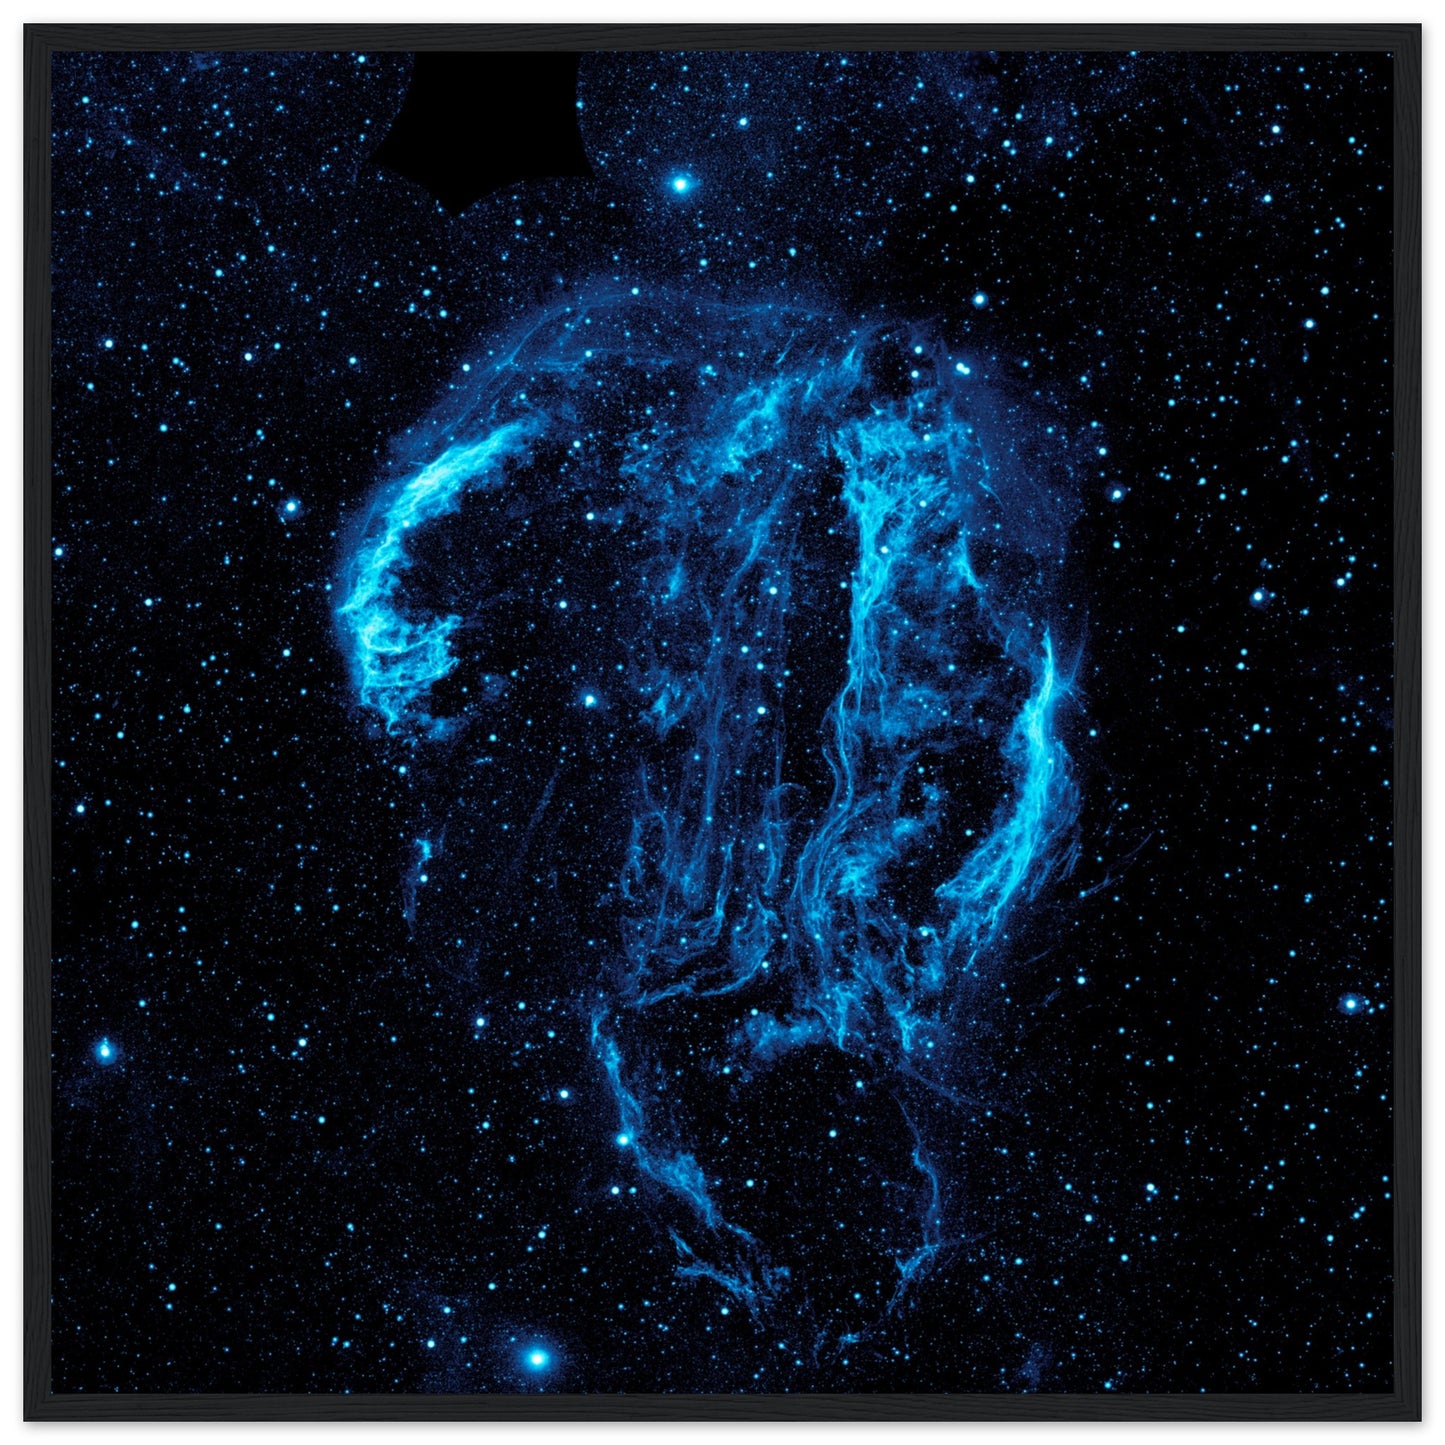 Cygnusbogen - hochauflösendes Weltraumbild - Premium Poster